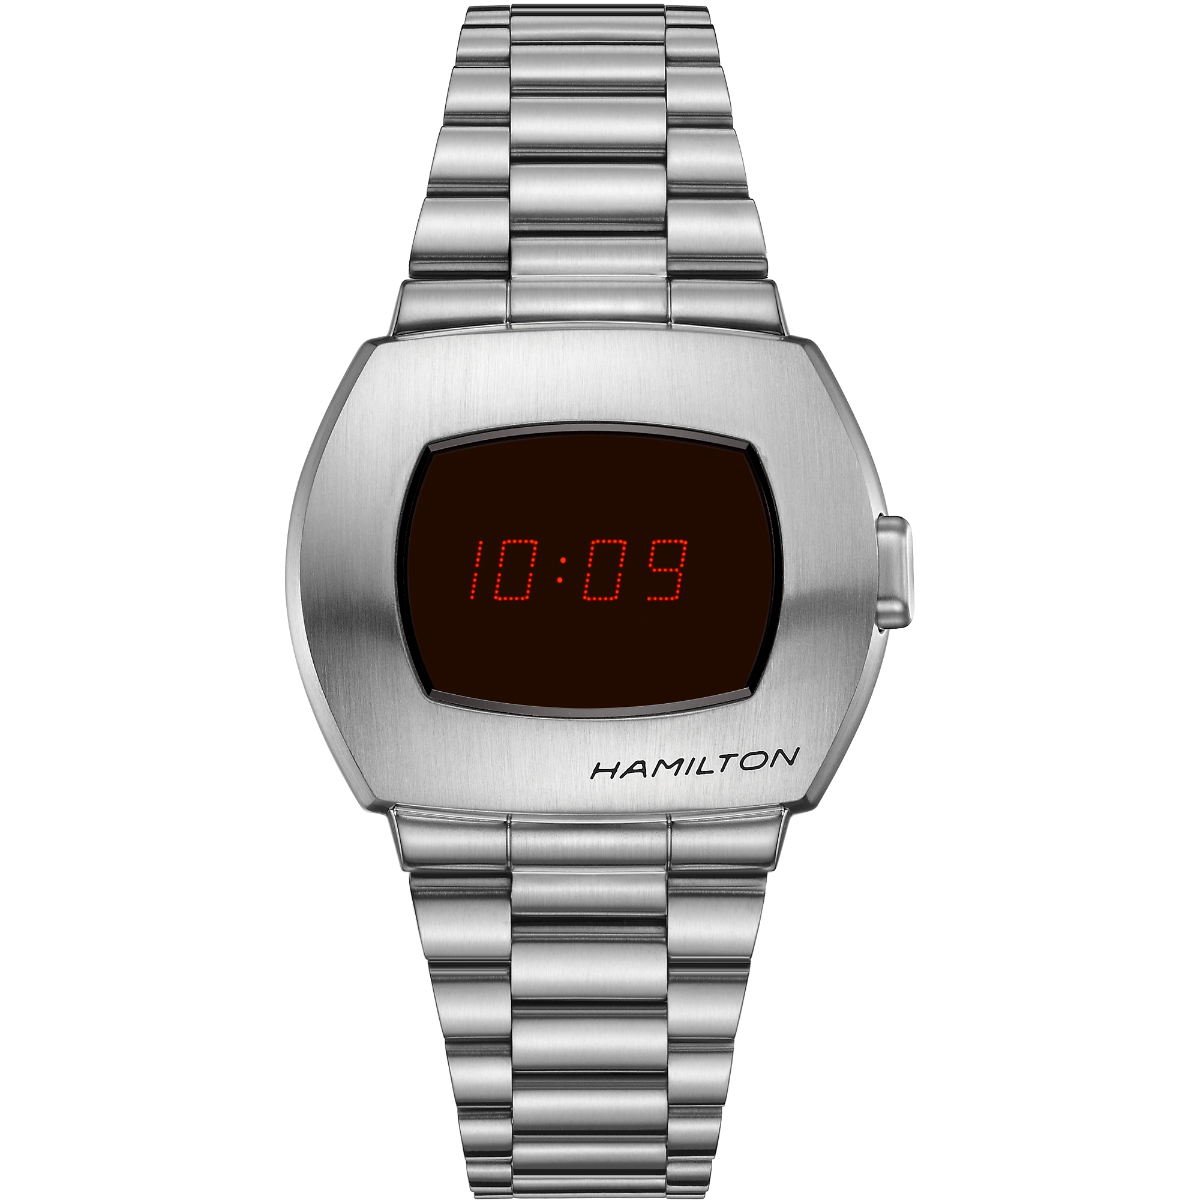 American Classic PSR Digital Quartz | Hamilton Watch - H52414130 